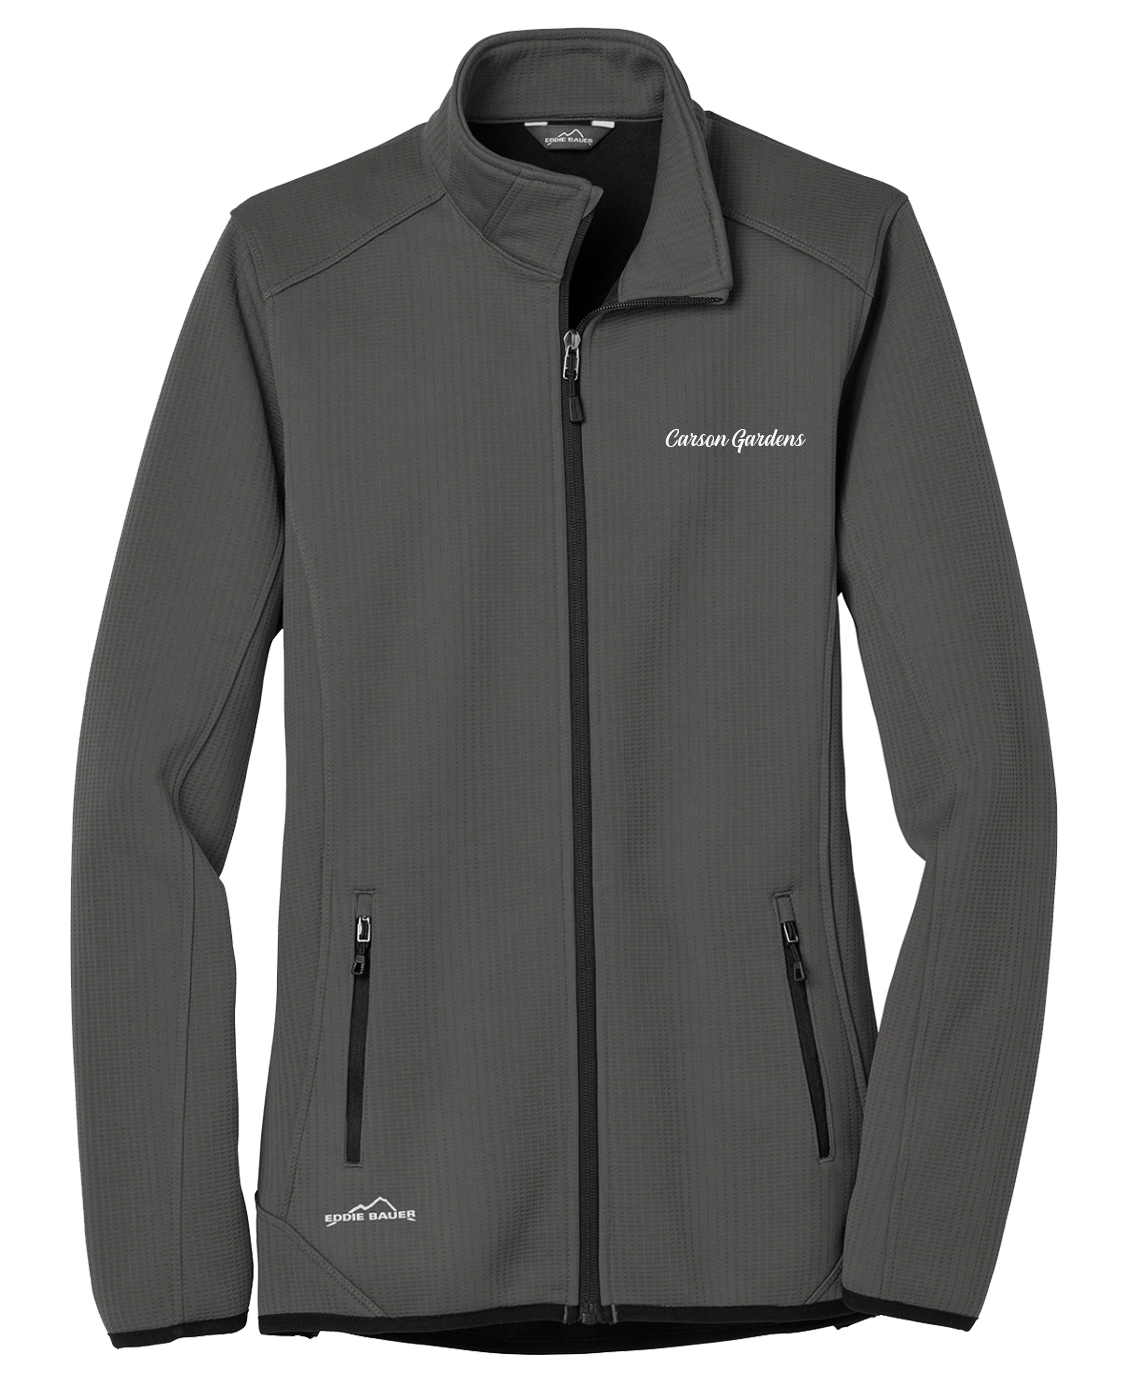 Carson Gardens - Ladies - Eddie Bauer ® Dash Full-Zip Fleece Jacket